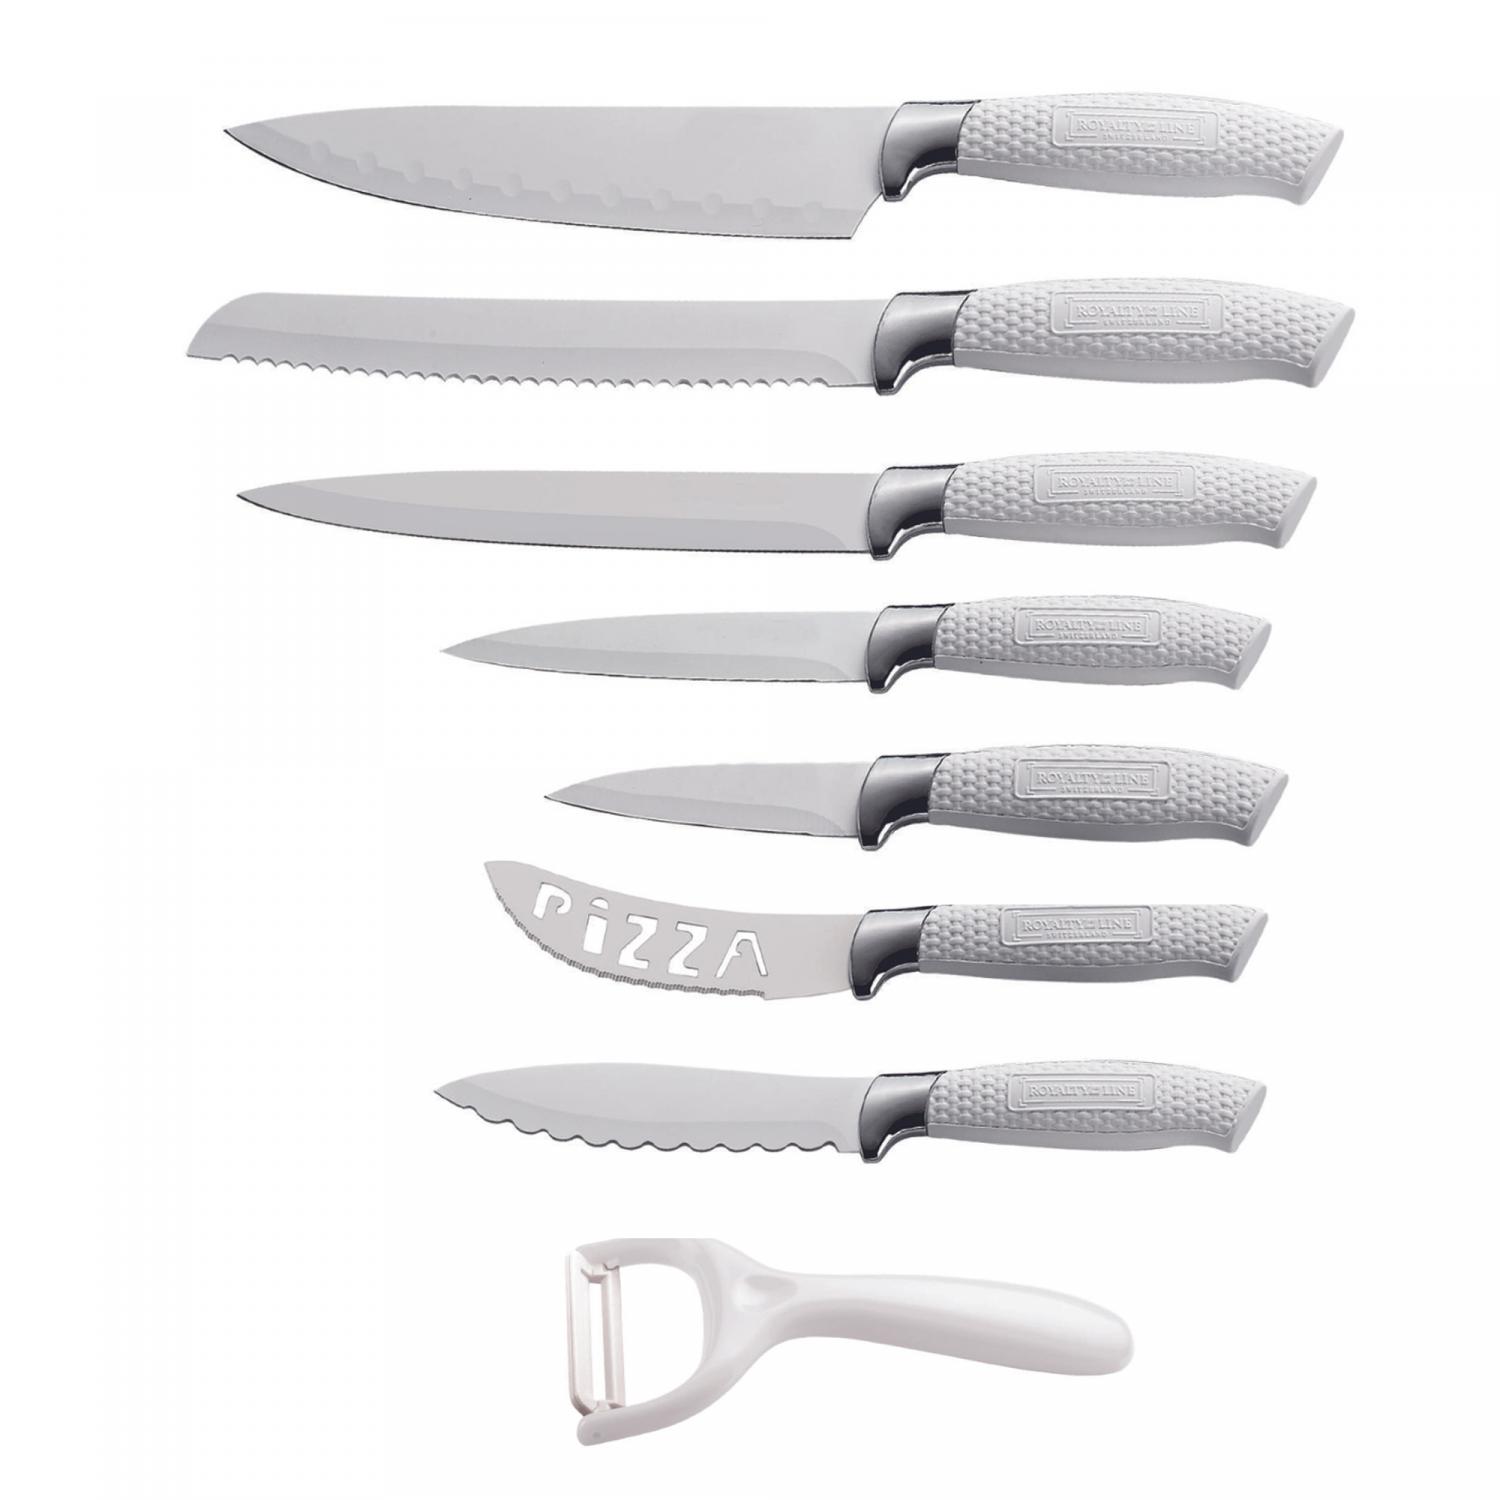 Acheter Couteaux de cuisine, ensemble d'accessoires de couteaux en céramique  3 à éplucher 4 utilitaire 5 à trancher 6 couteau de Chef + support +  éplucheur lame noire